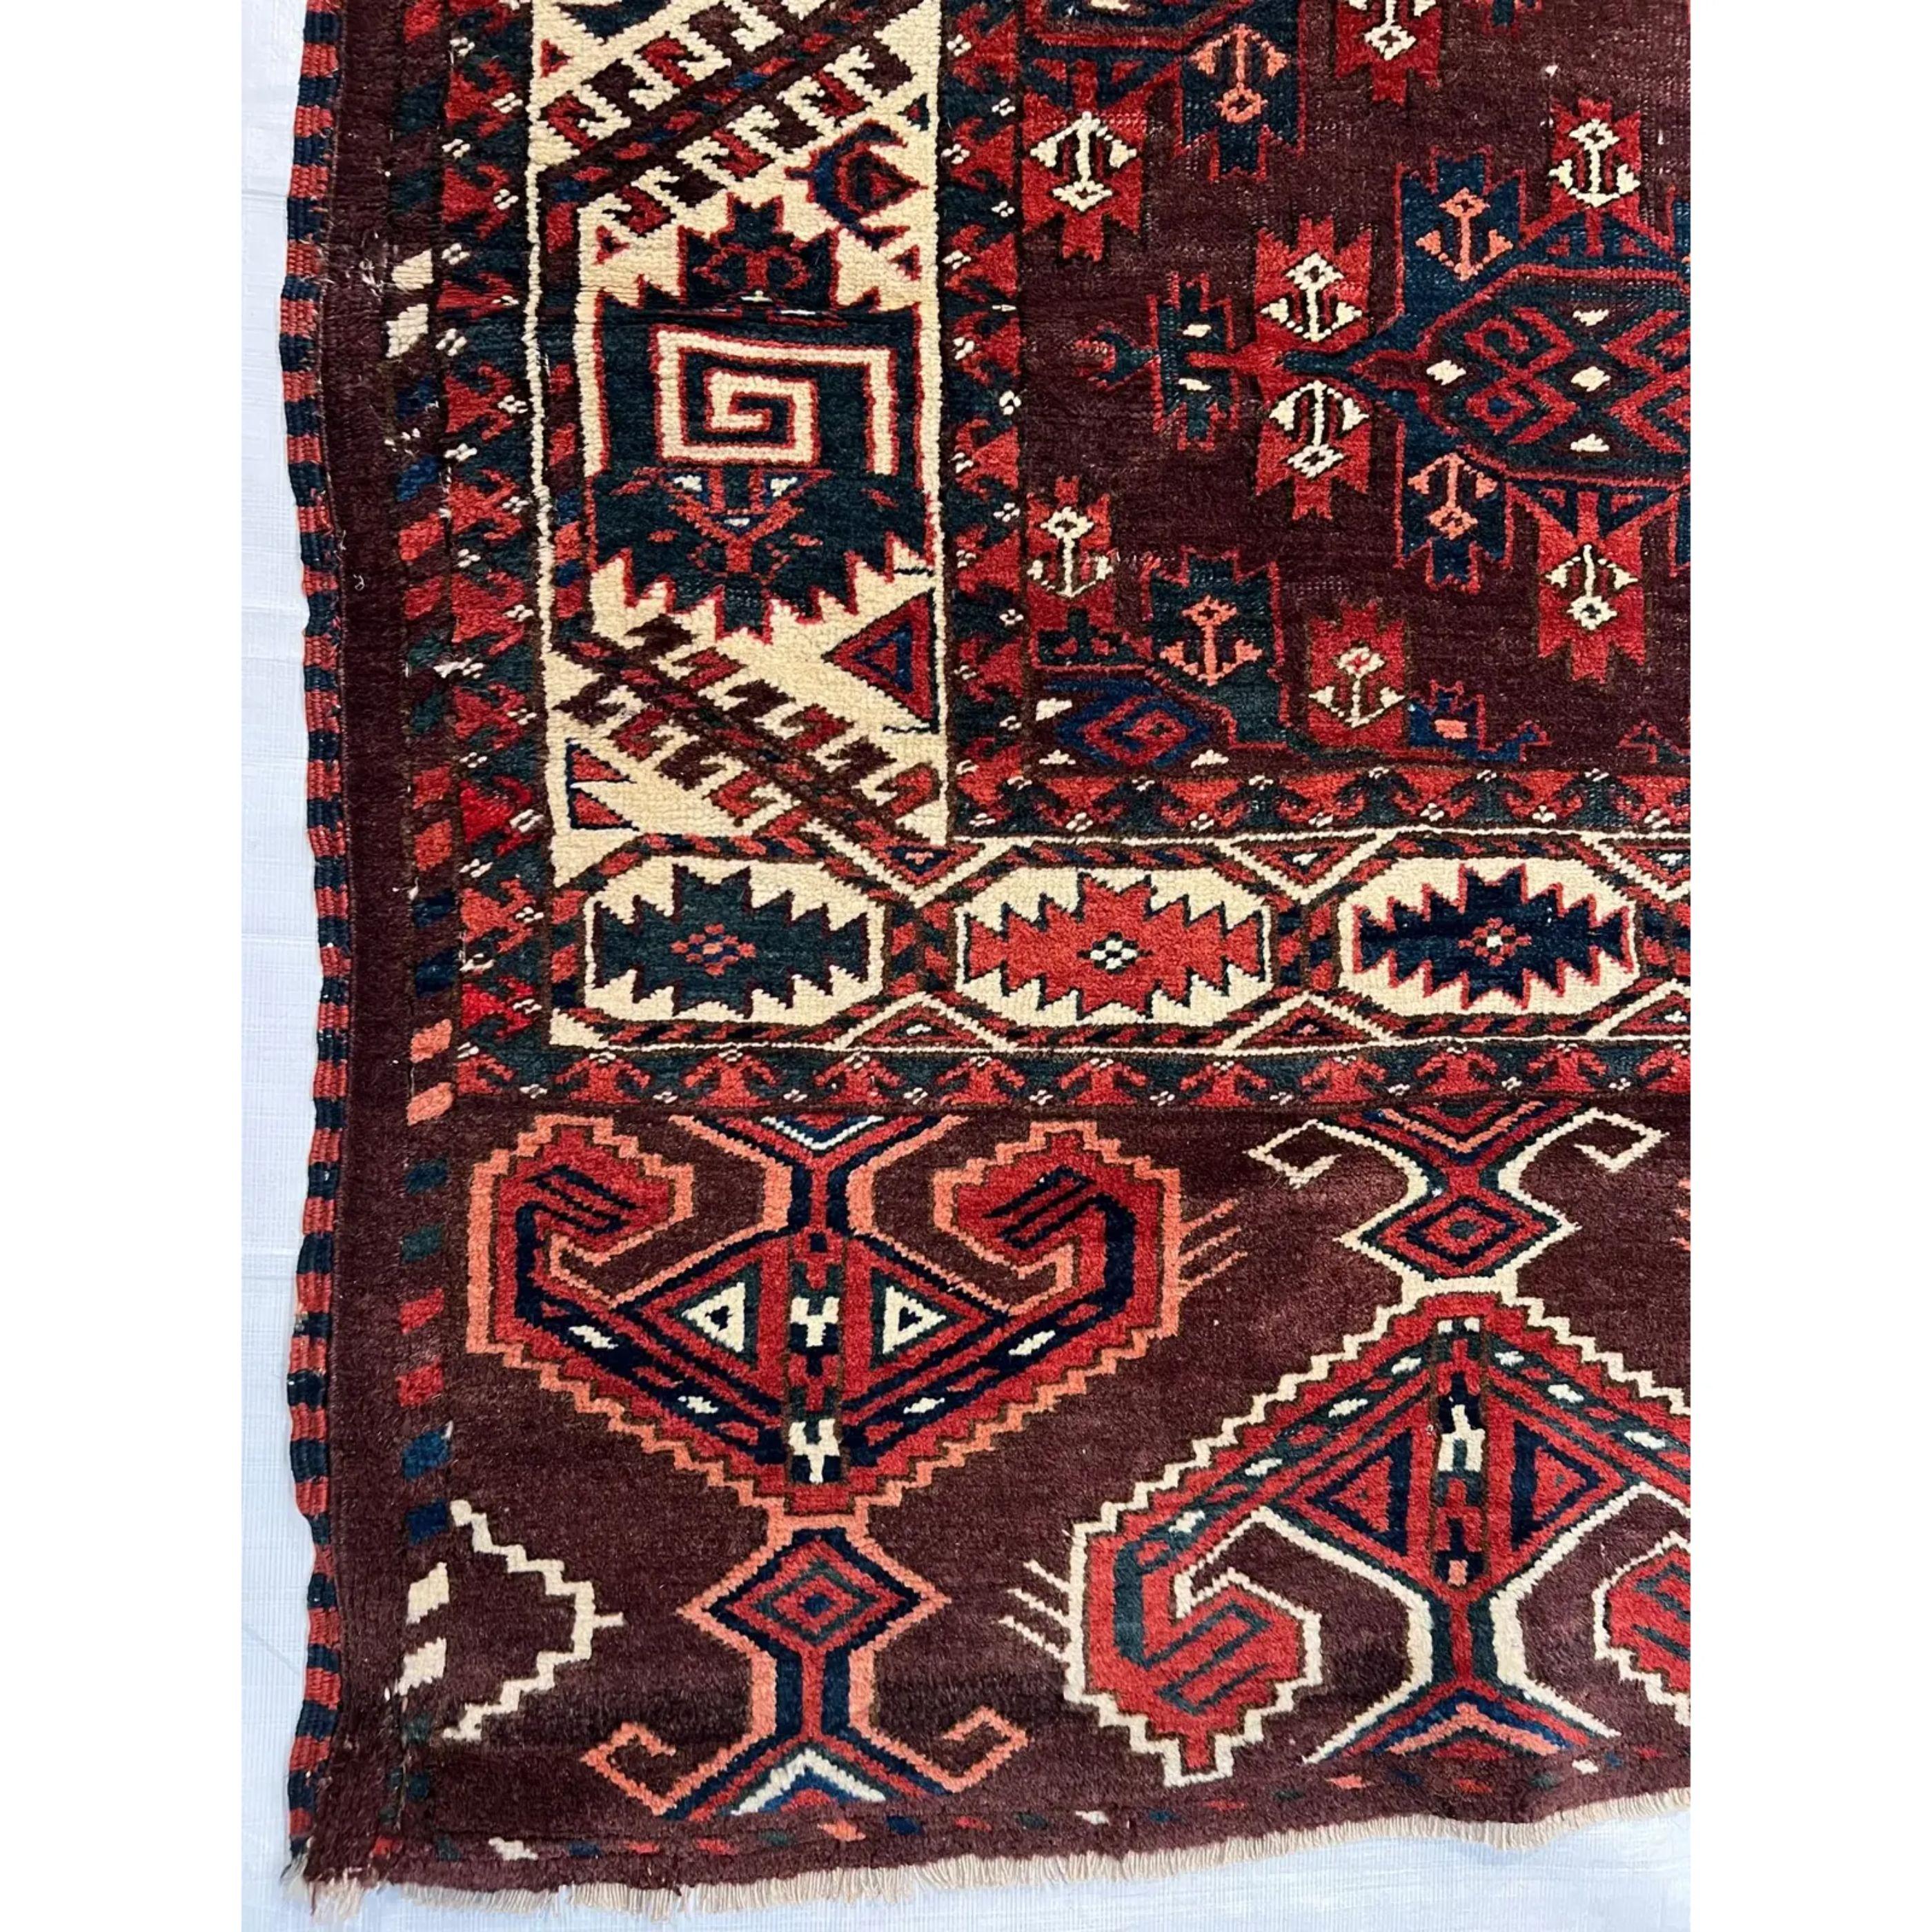 Tapis ancien Turkeman des années 1900, fait et noué à la main, tapis tribal